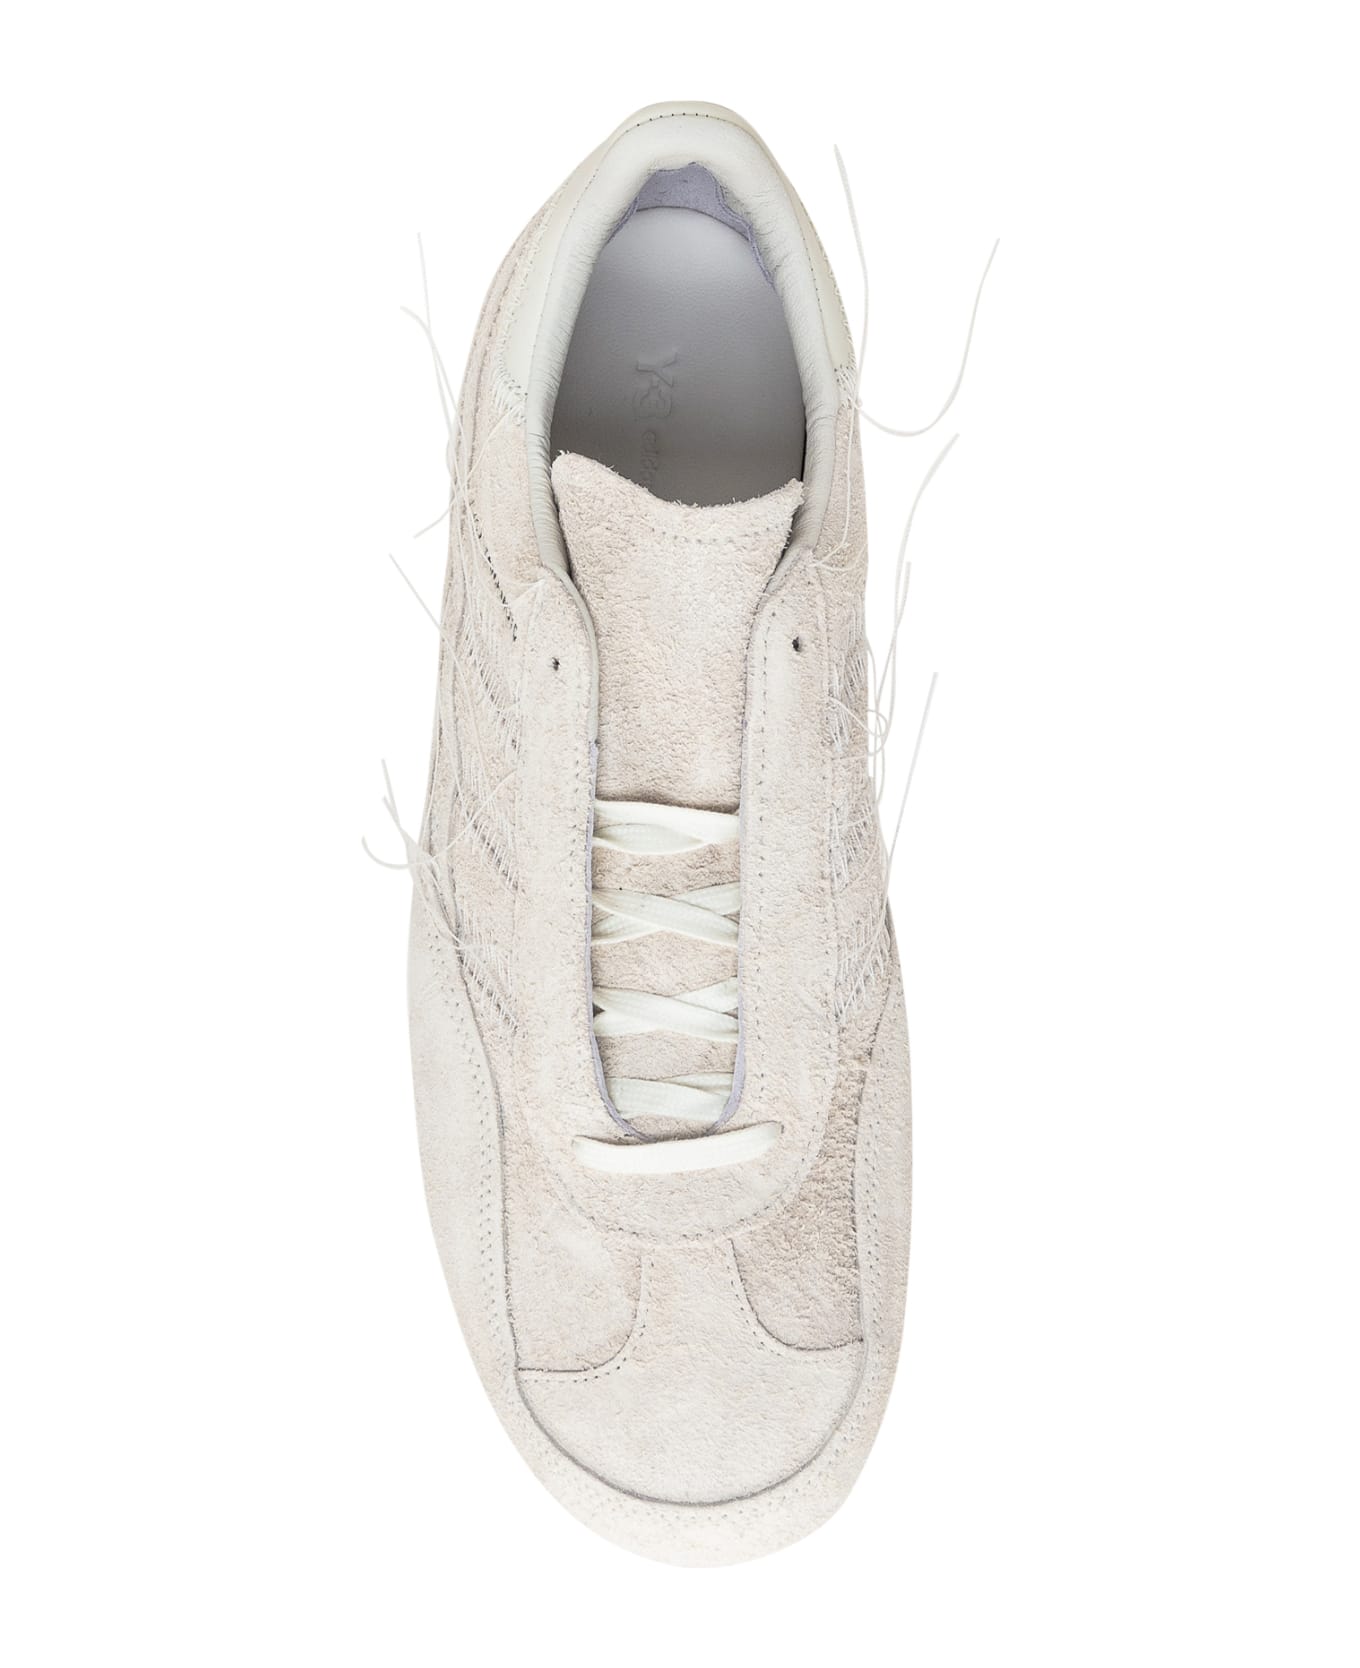 Y-3 Gazelle Sneaker - OWHITE/OWHITE/OWHITE